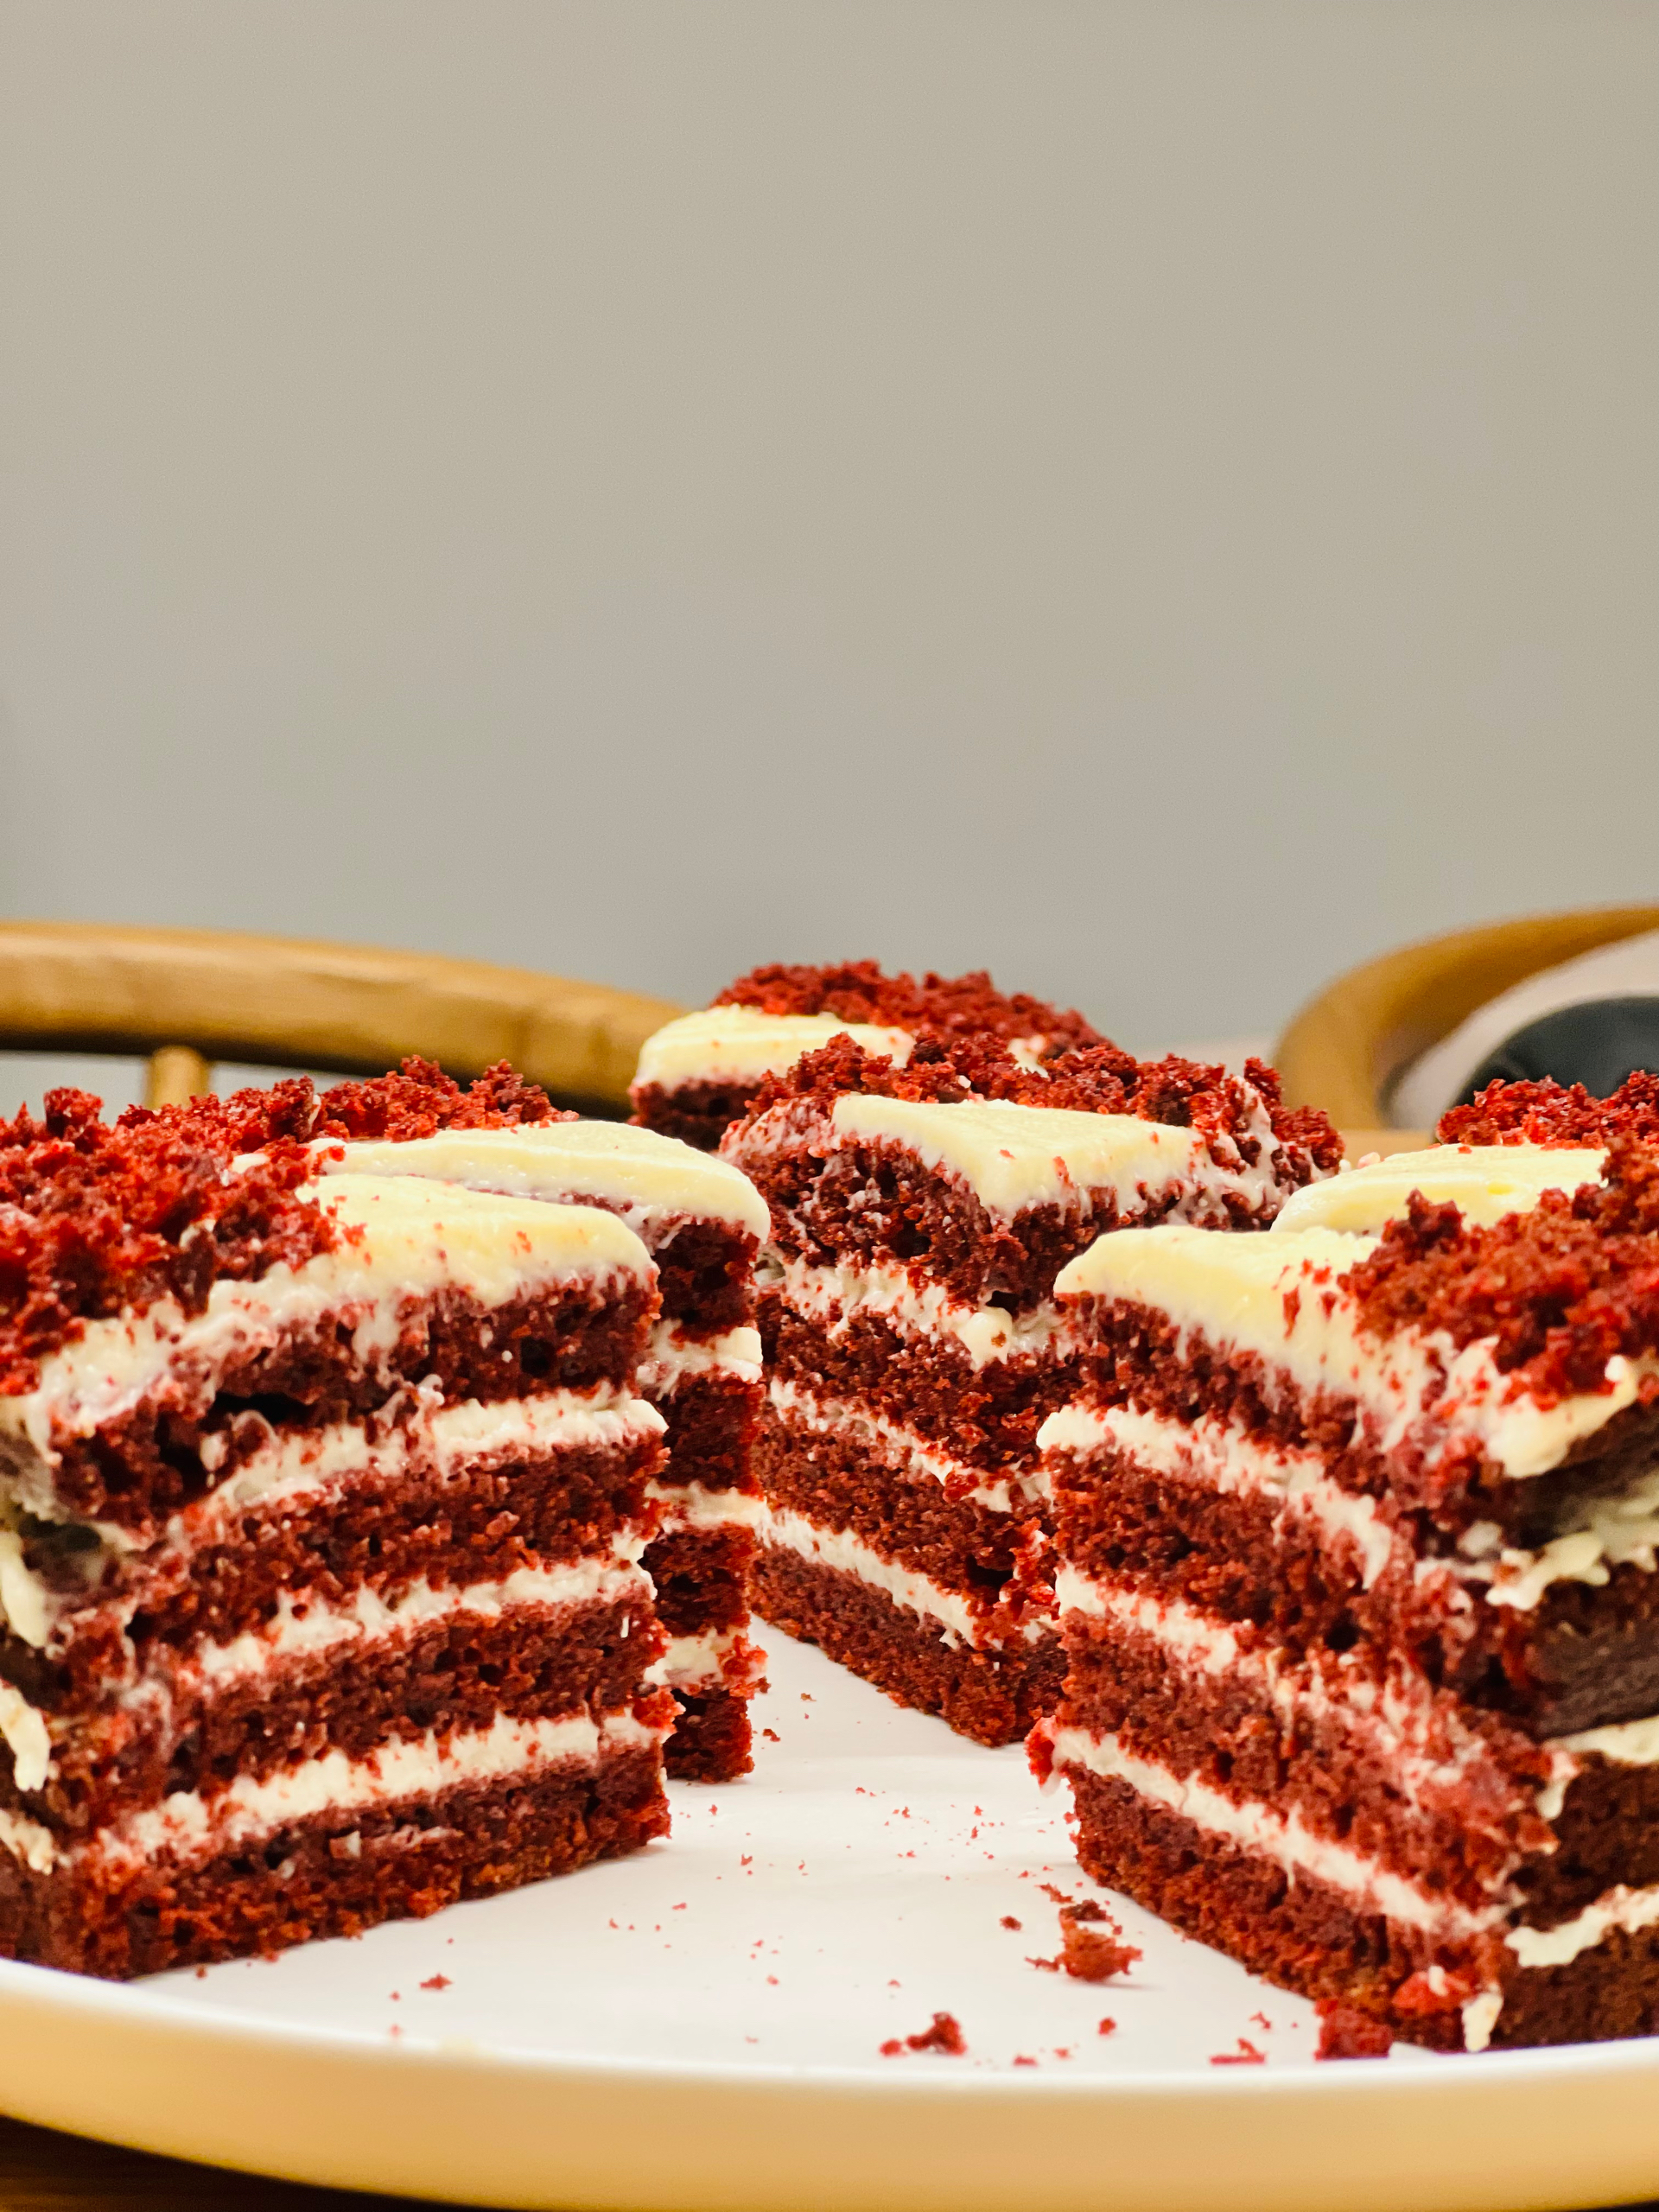 超正宗的红丝绒蛋糕